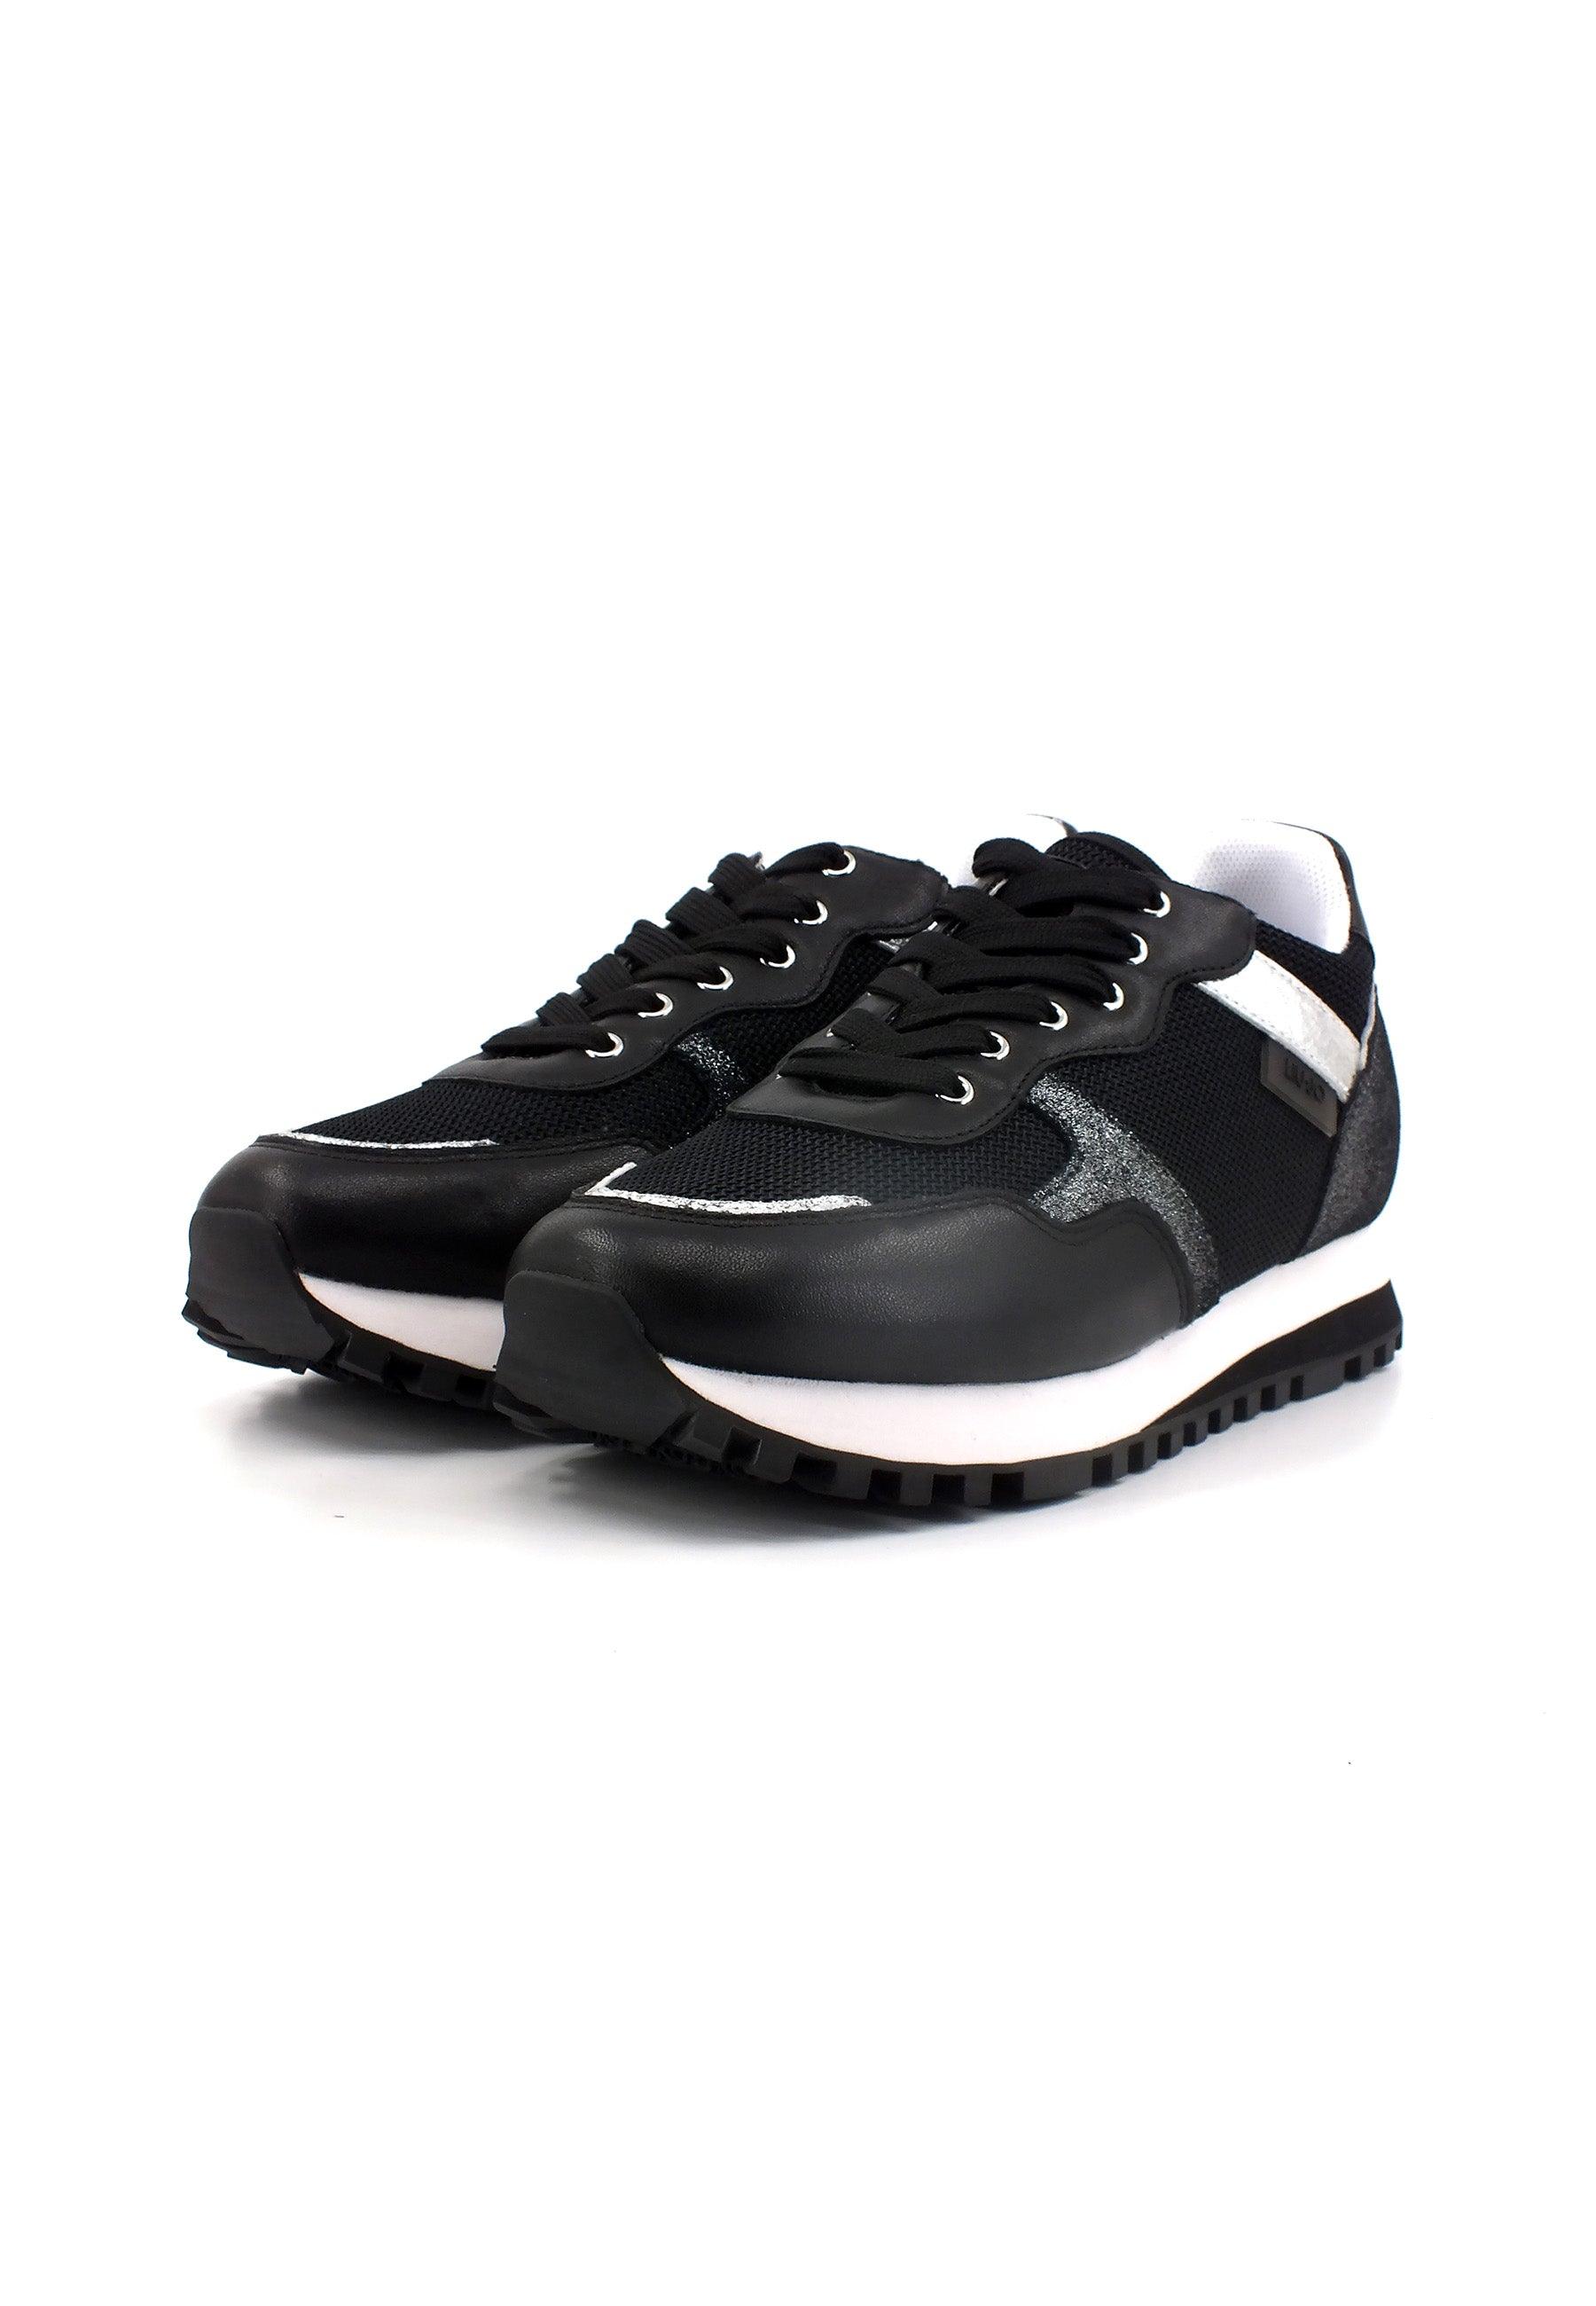 LIU JO Wonder 01 Sneaker Donna Black BF3001PX340 - Sandrini Calzature e Abbigliamento